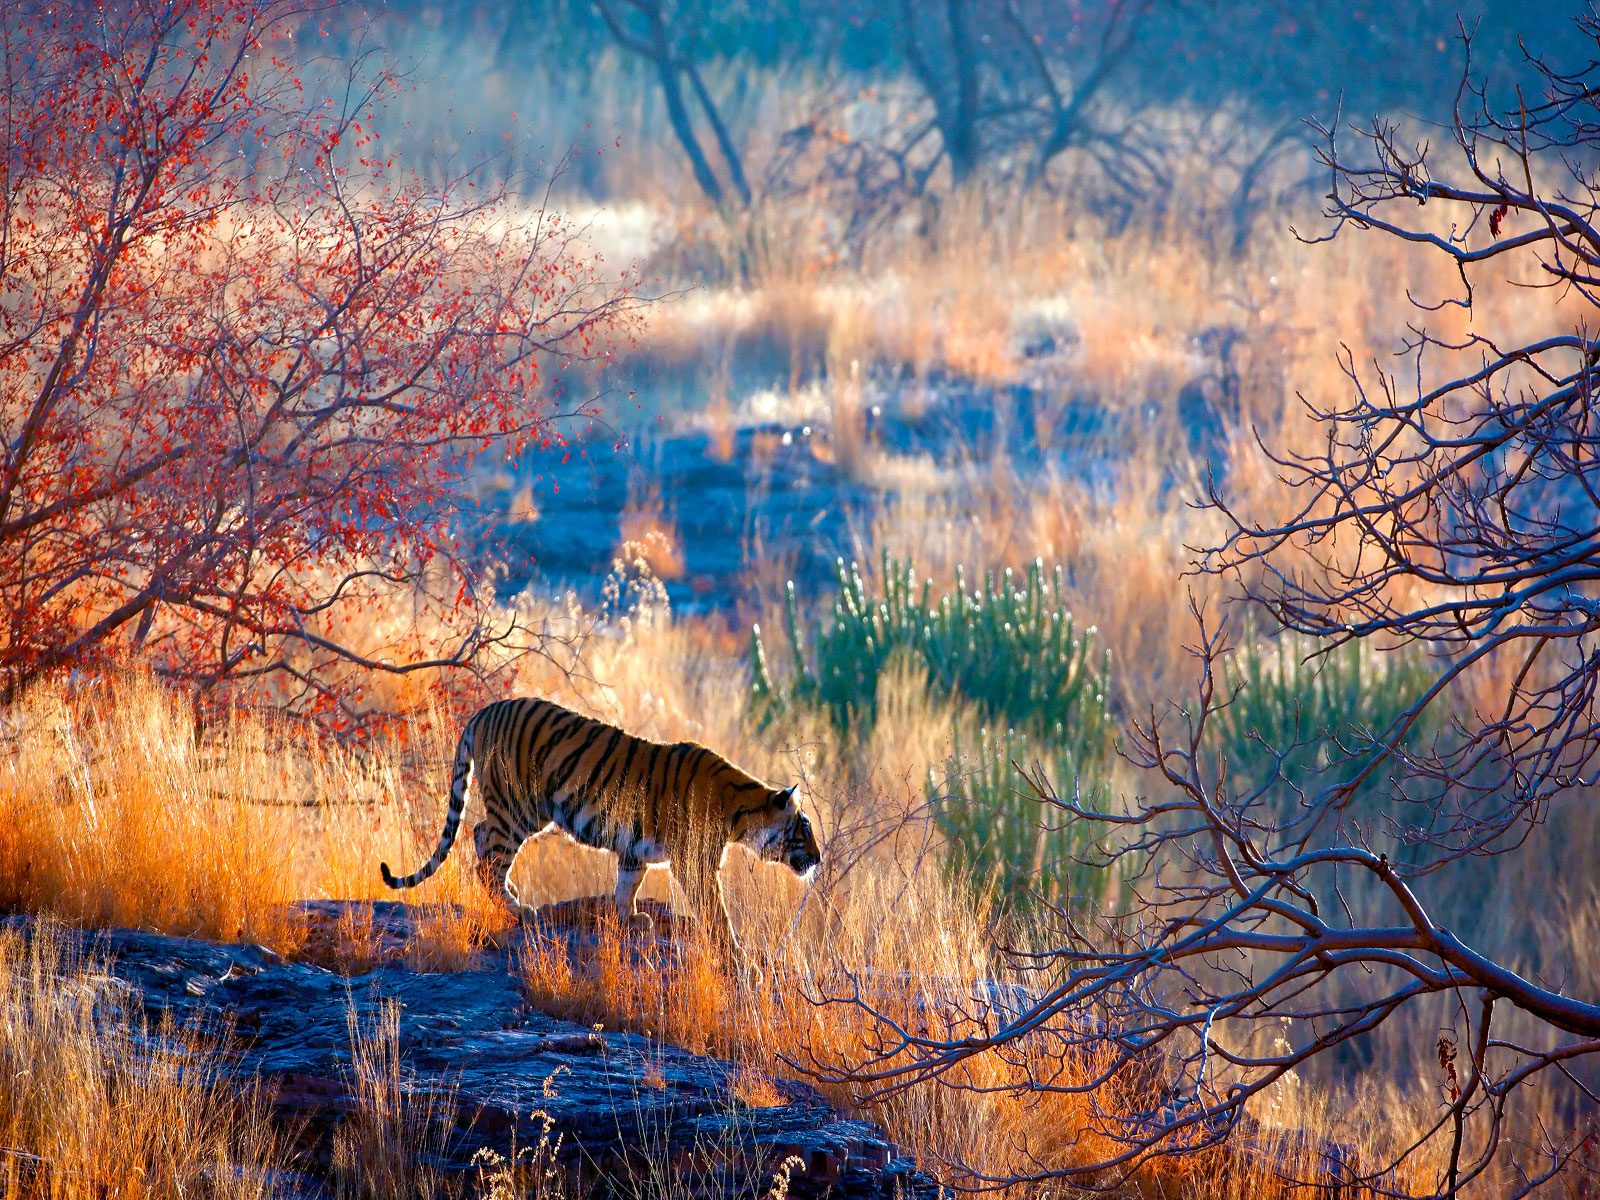 Ein Tiger im wundervollen Ranthambore-Nationalpark in Rajasthan